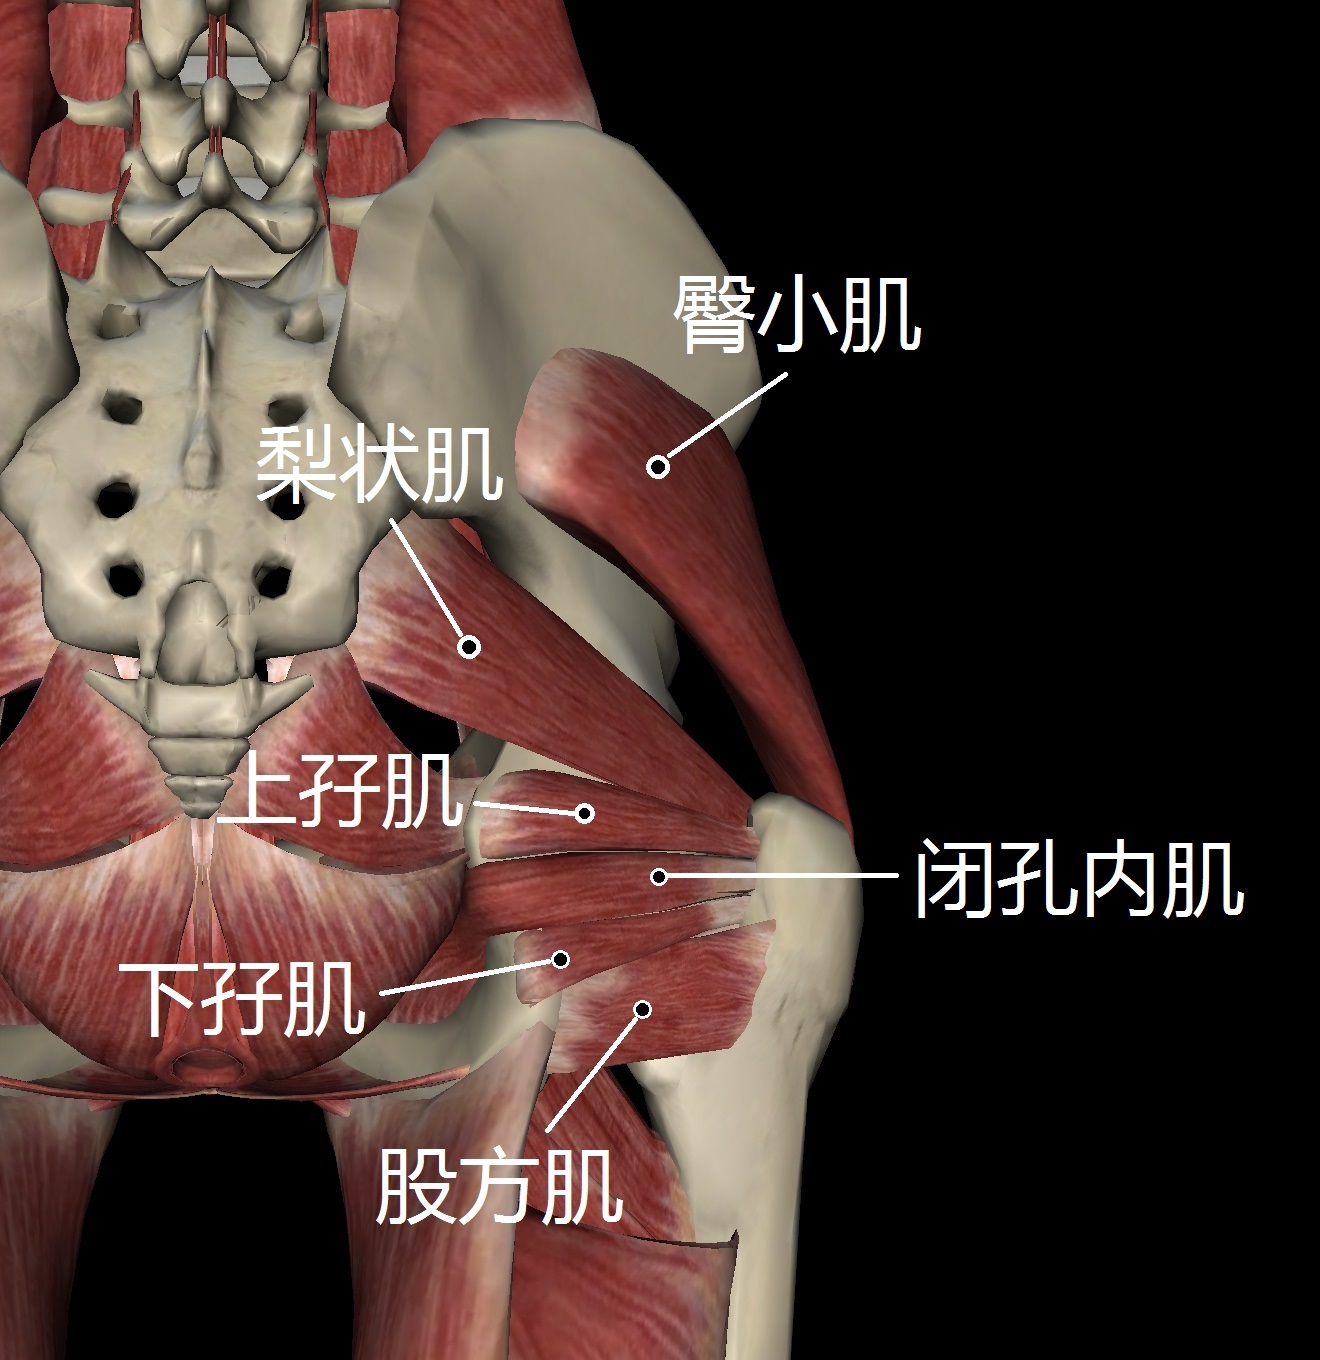 深层:臀小肌,梨状肌,上孖(ma,一声)肌,下孖肌,闭孔内肌,股方肌表层:臀